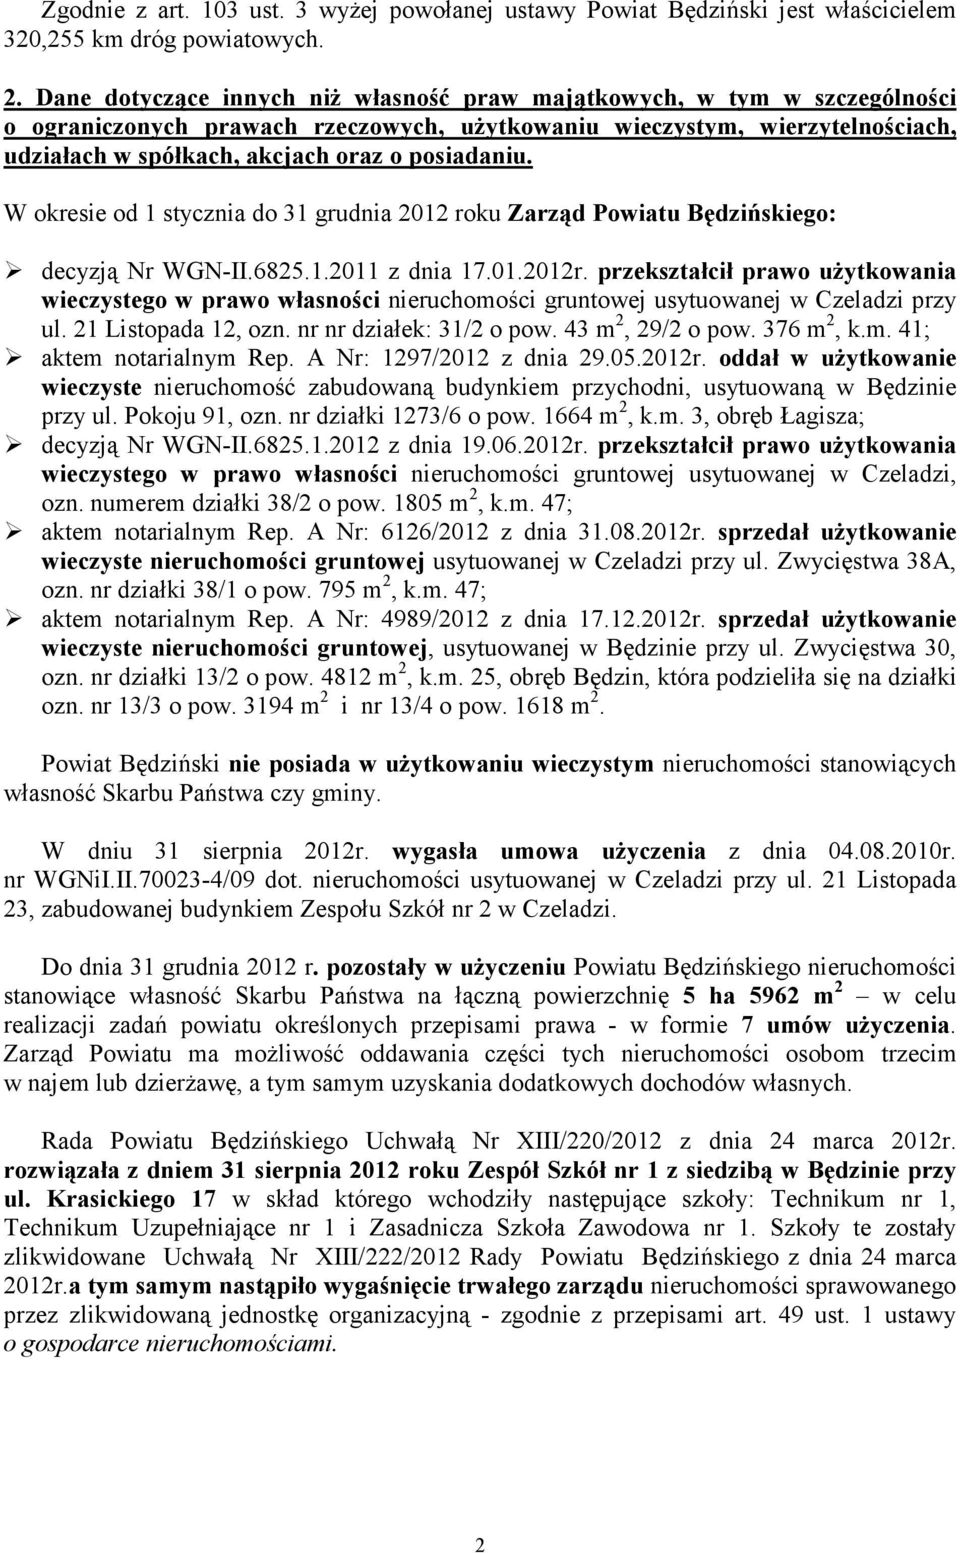 posiadaniu. W okresie od 1 stycznia do 31 grudnia 2012 roku Zarząd Powiatu Będzińskiego: decyzją Nr WGN-II.6825.1.2011 z dnia 17.01.2012r.